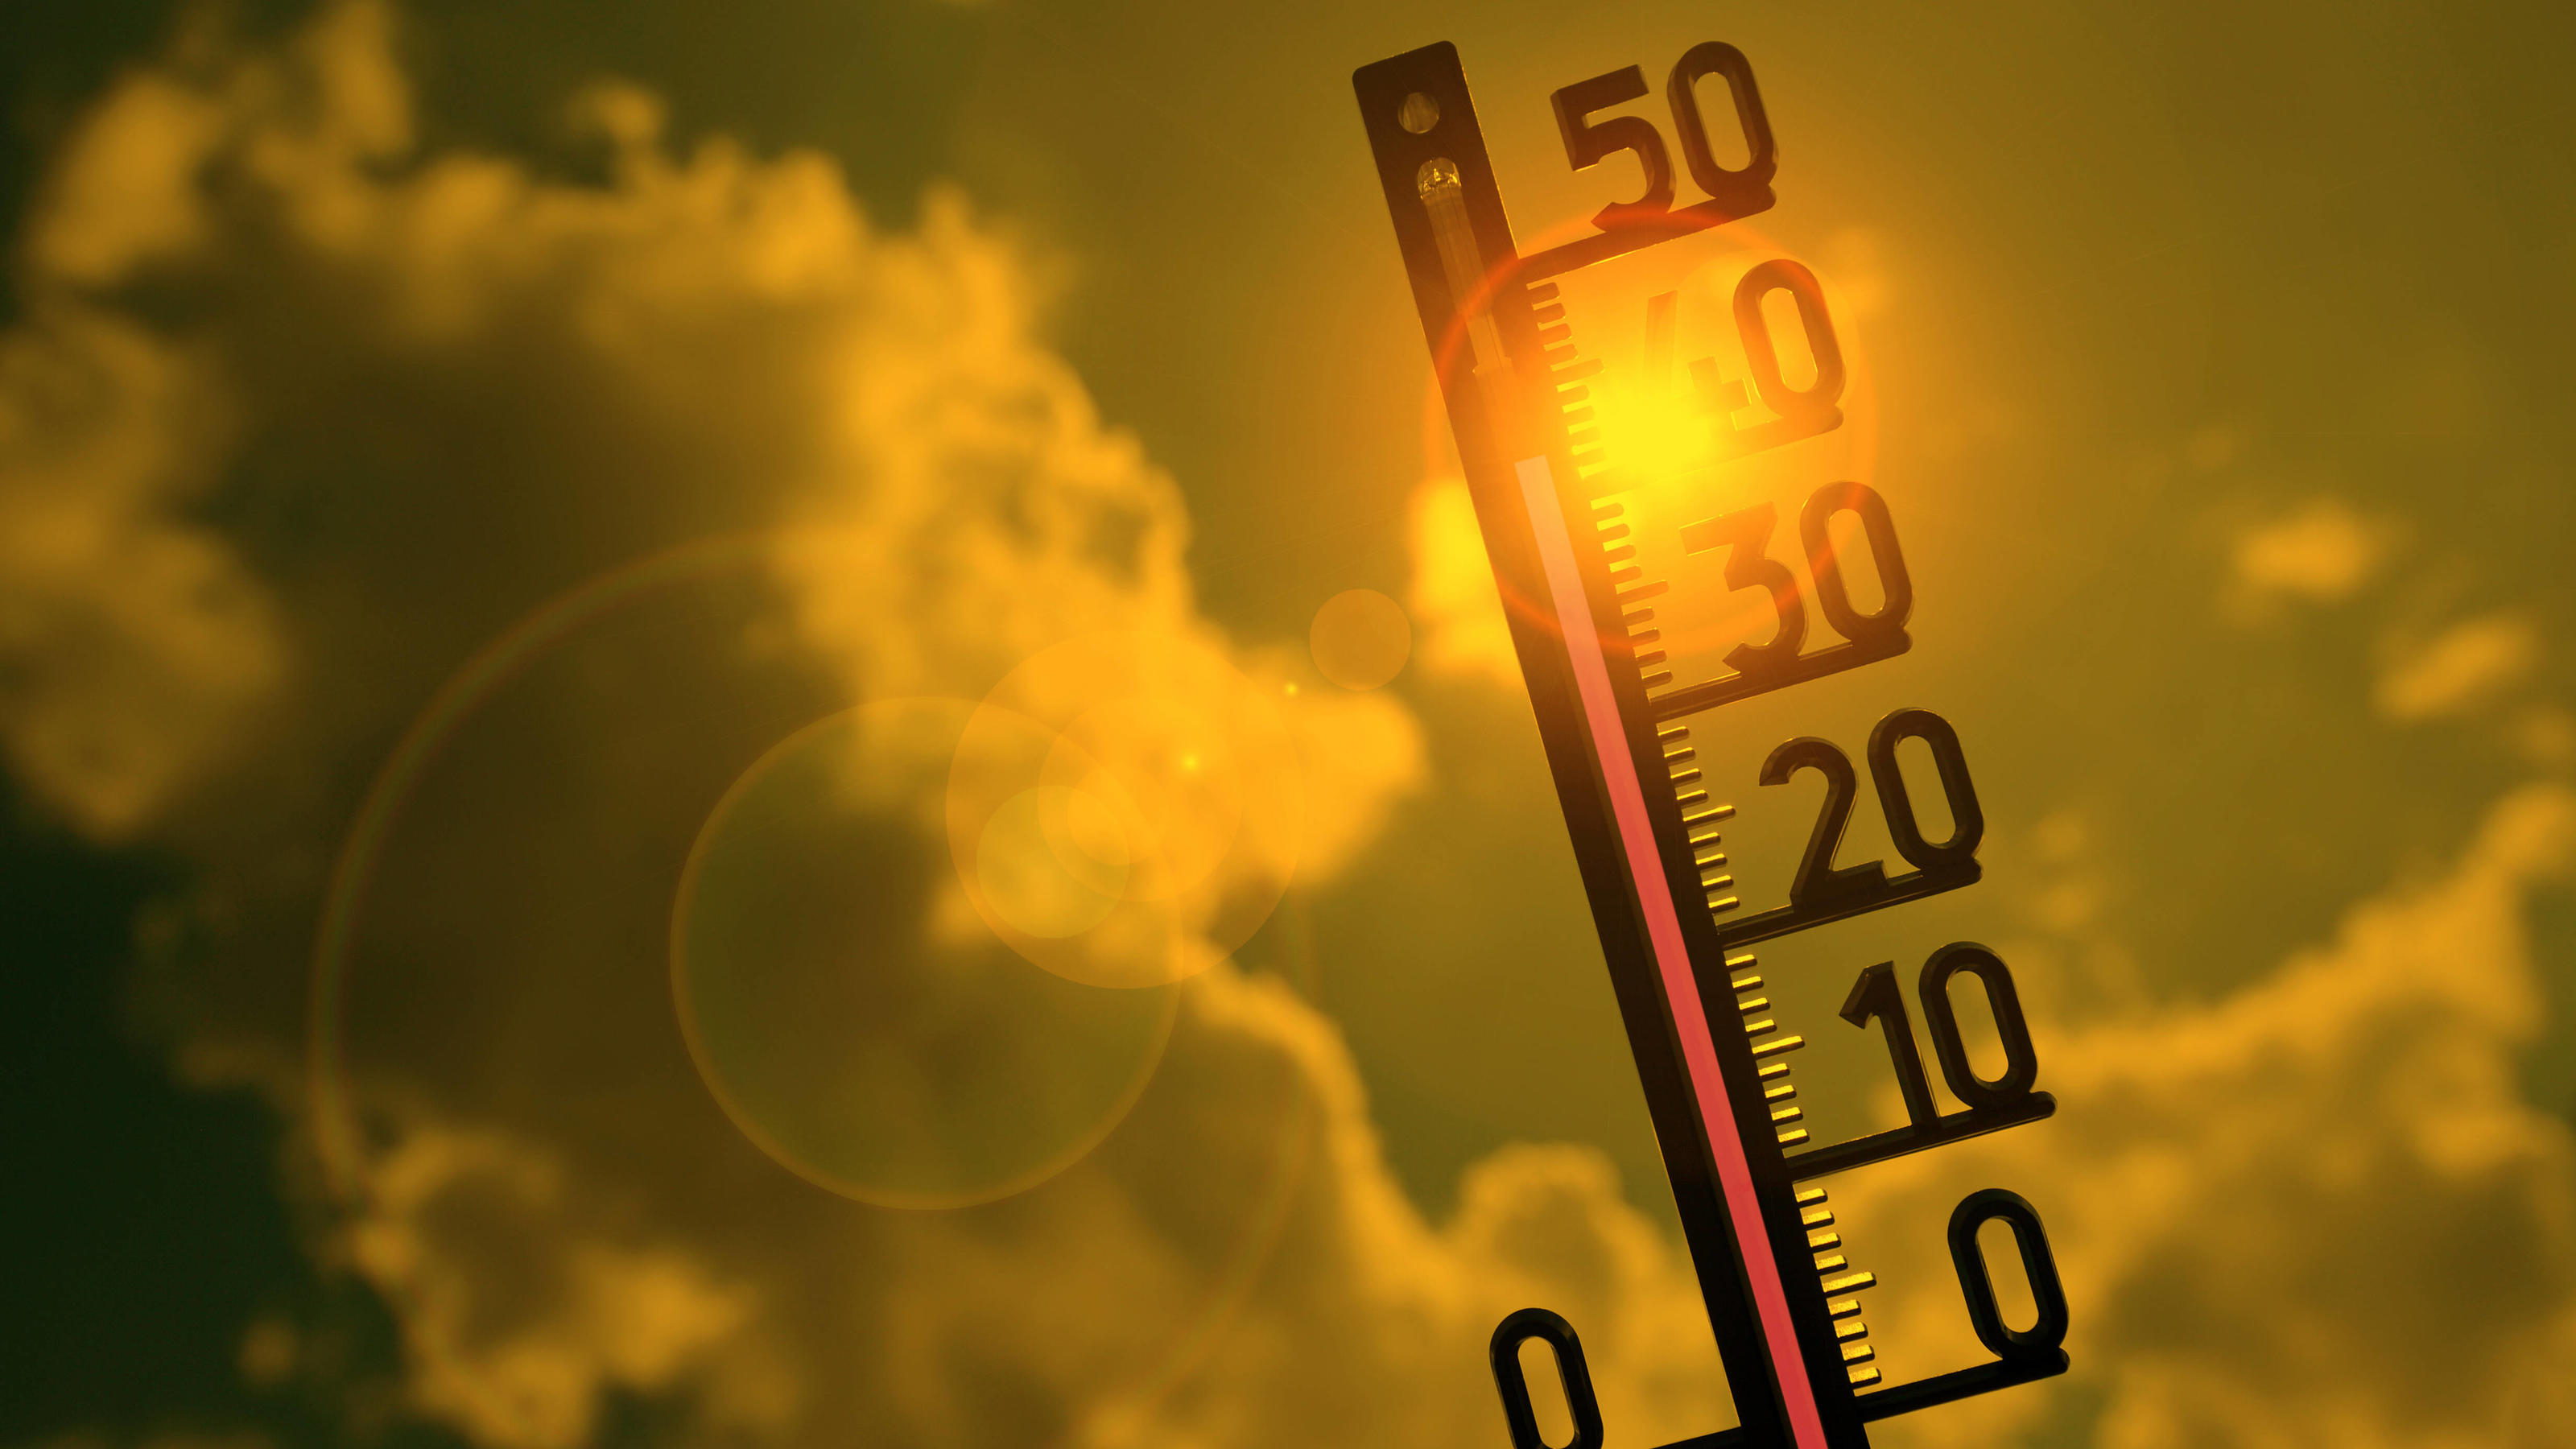 Hitzewelle mit Höchstwerten von über 40 Grad jetzt in Teilen Südeuropas